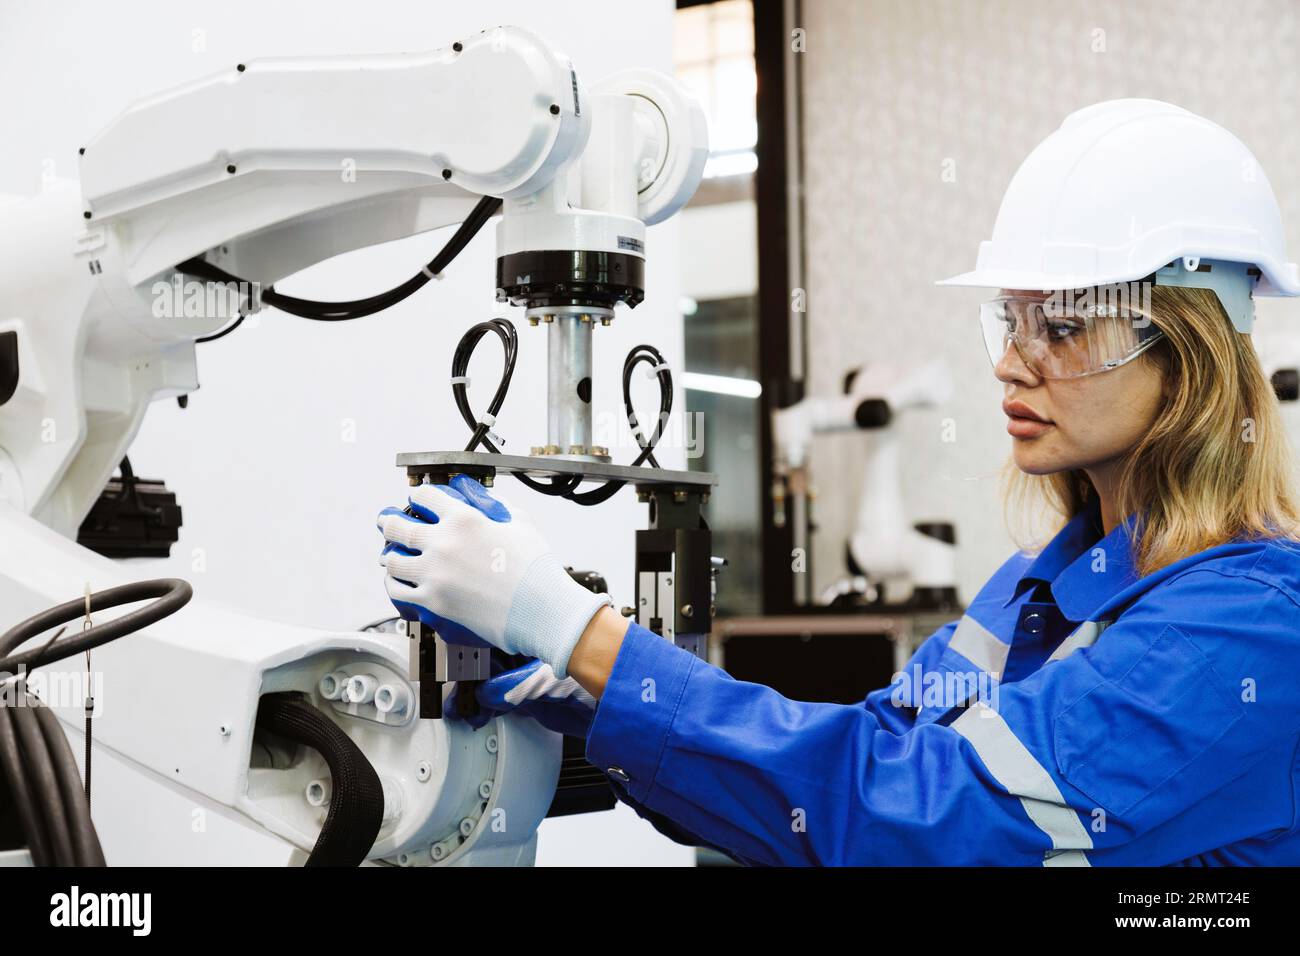 Studentinnen in der Automationstechnik studieren und kontrollieren Roboterarmmaschine in Universitäten oder Fabrikwerkstätten. ki-Robotertechnologie New i Stockfoto